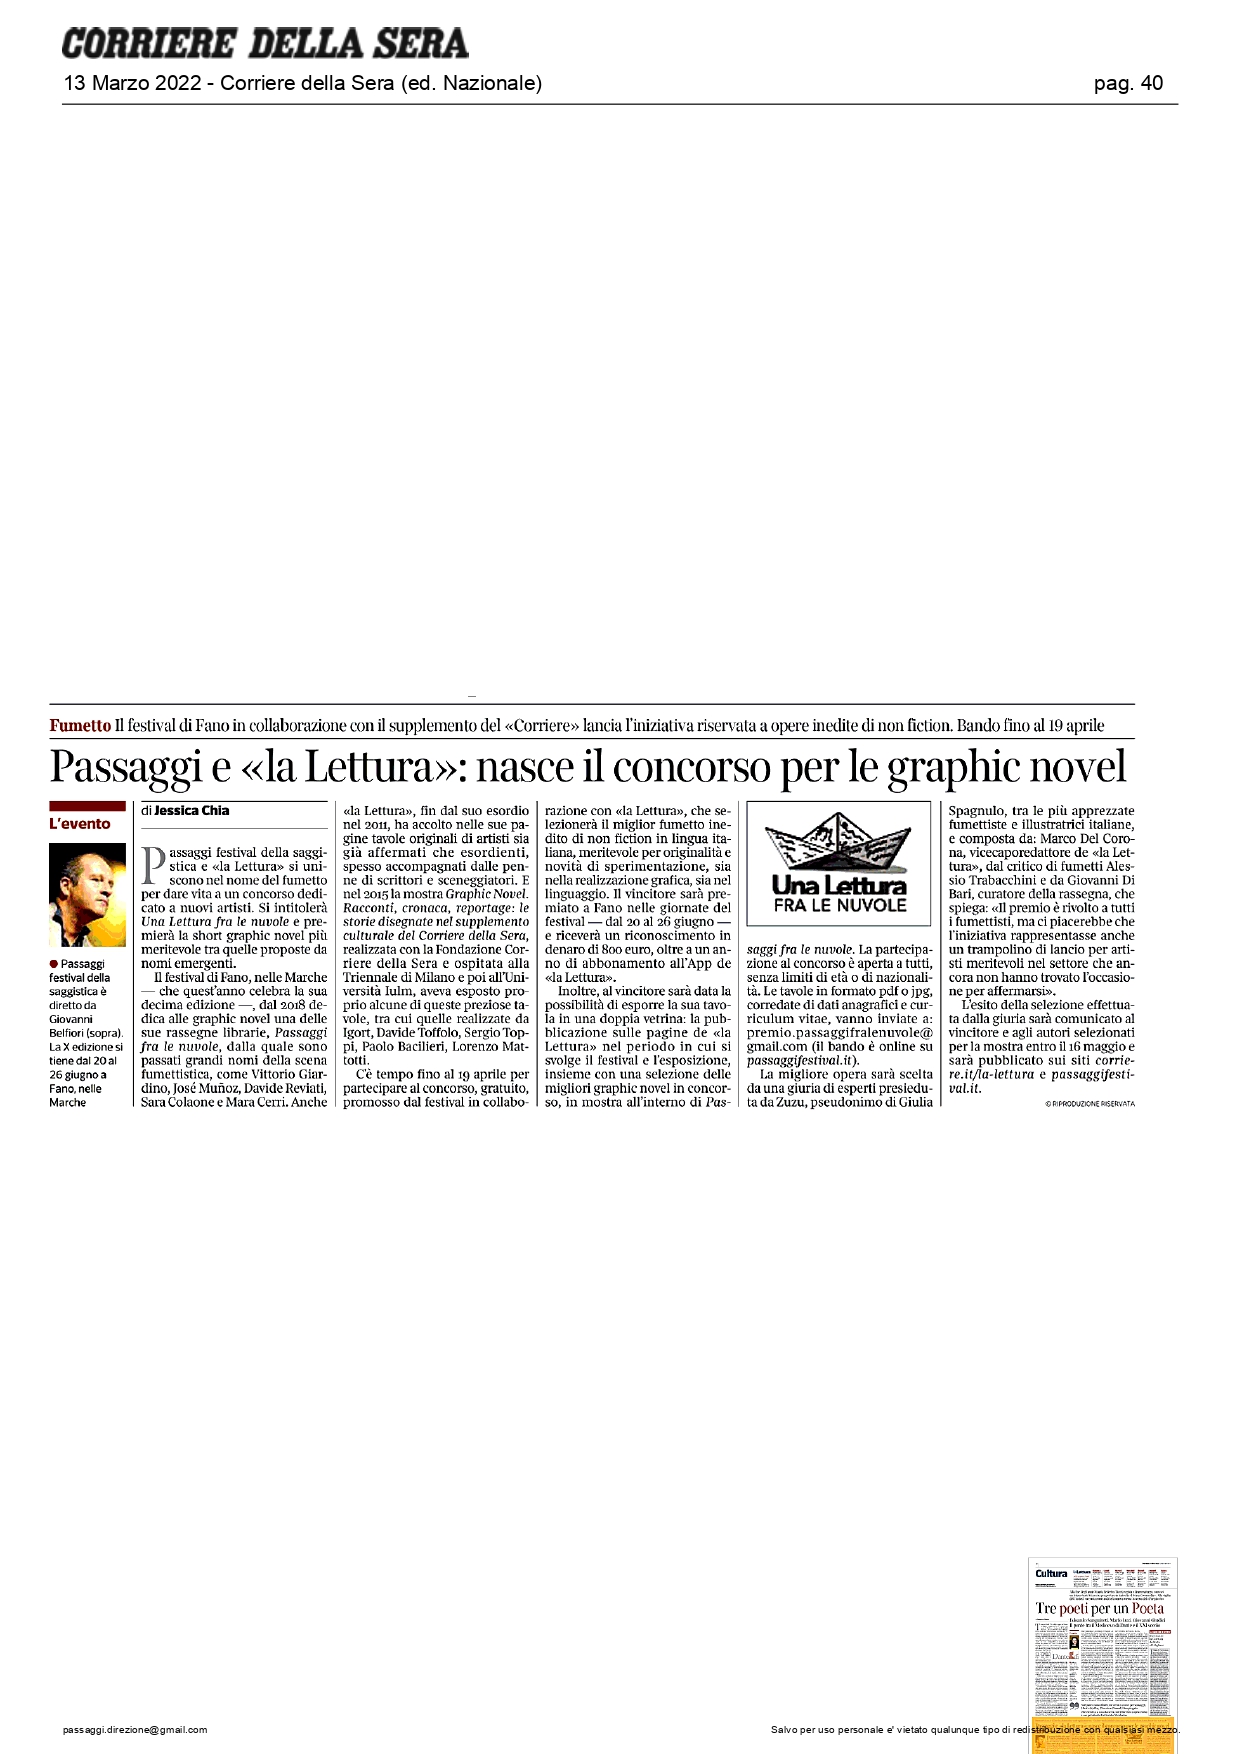 Corriere della Sera-Passaggi e "La Lettura": nasce il concorso per le graphic novel